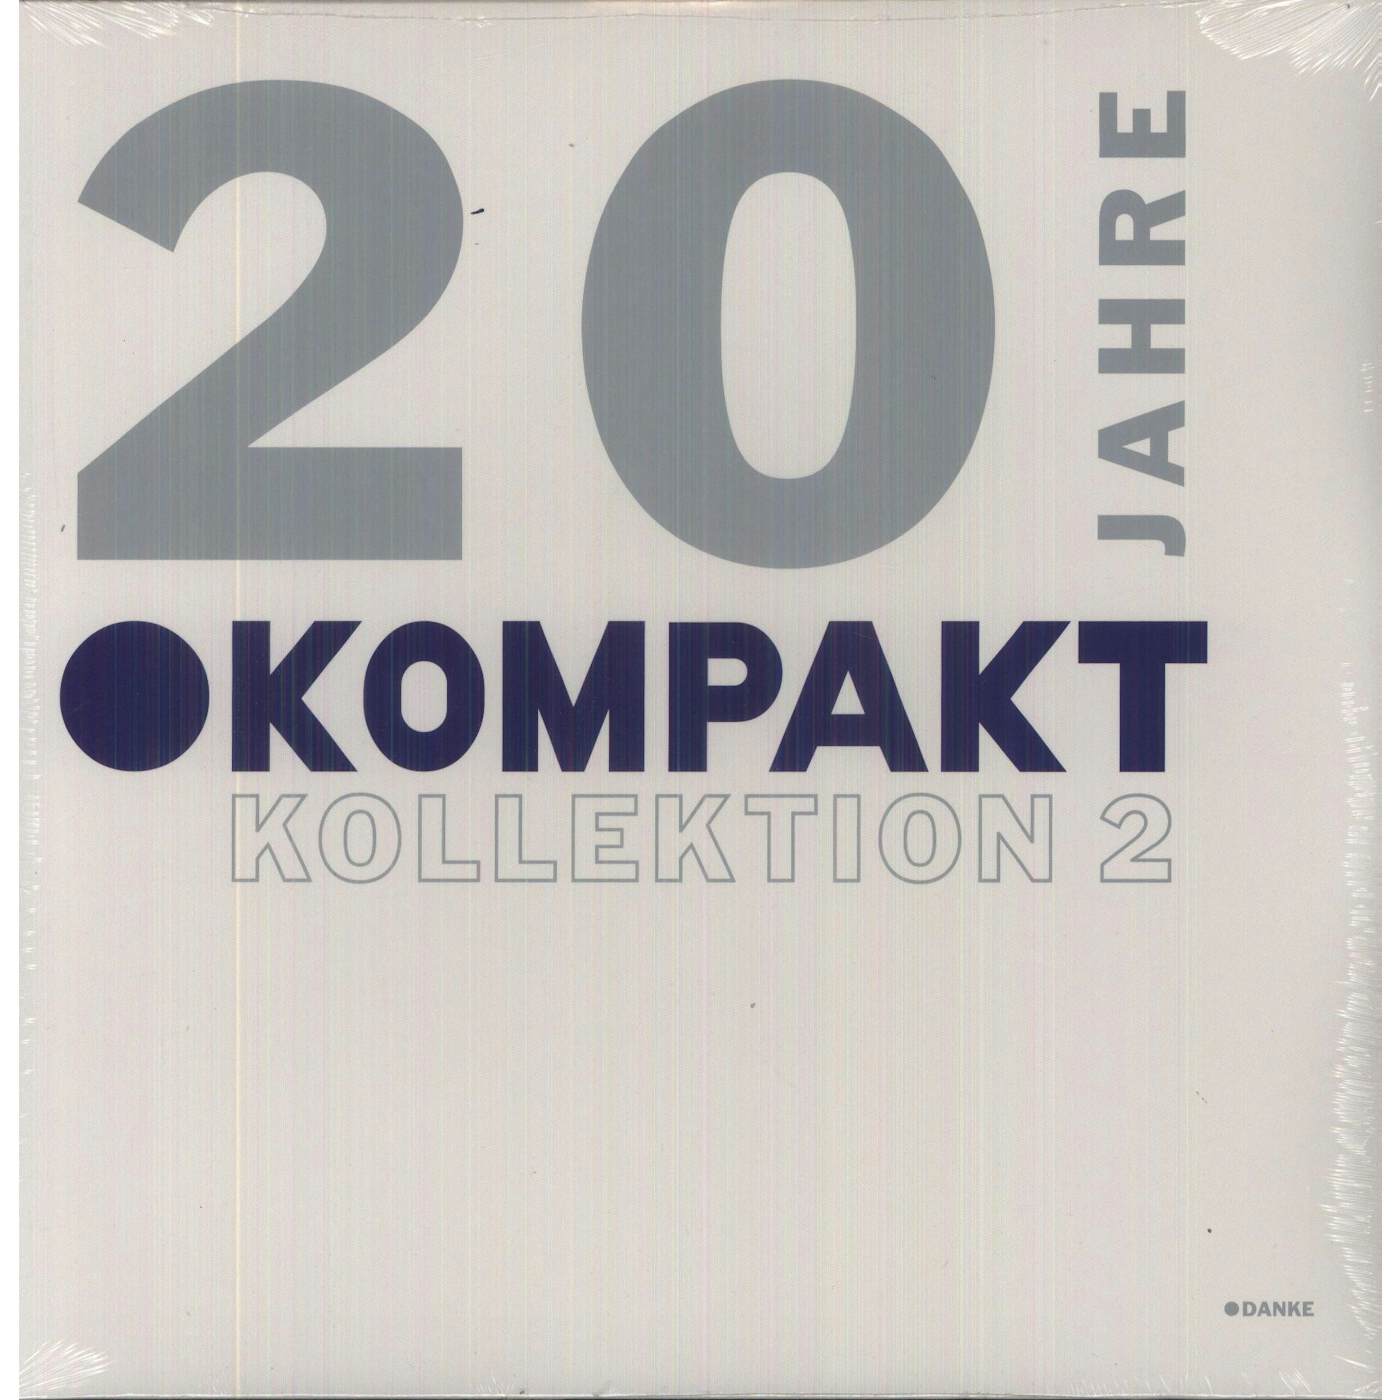 20 JAHRE KOMPAKT / KOLLEKTION 2 / VARIOUS Vinyl Record